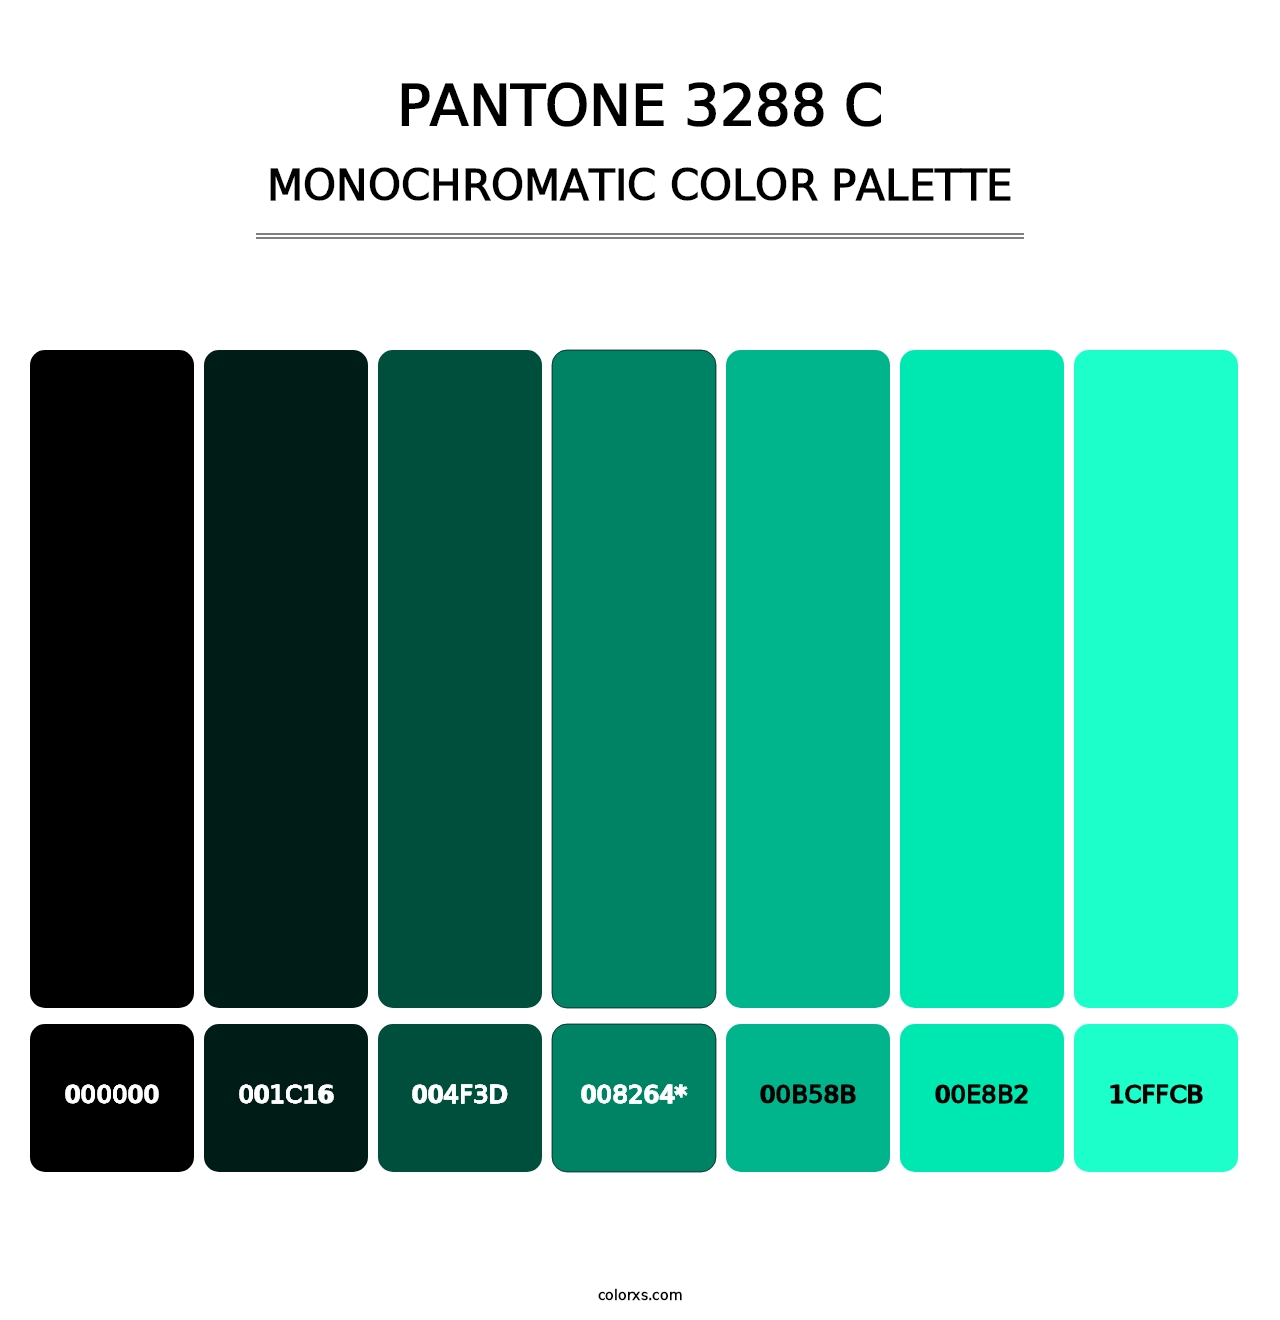 PANTONE 3288 C - Monochromatic Color Palette